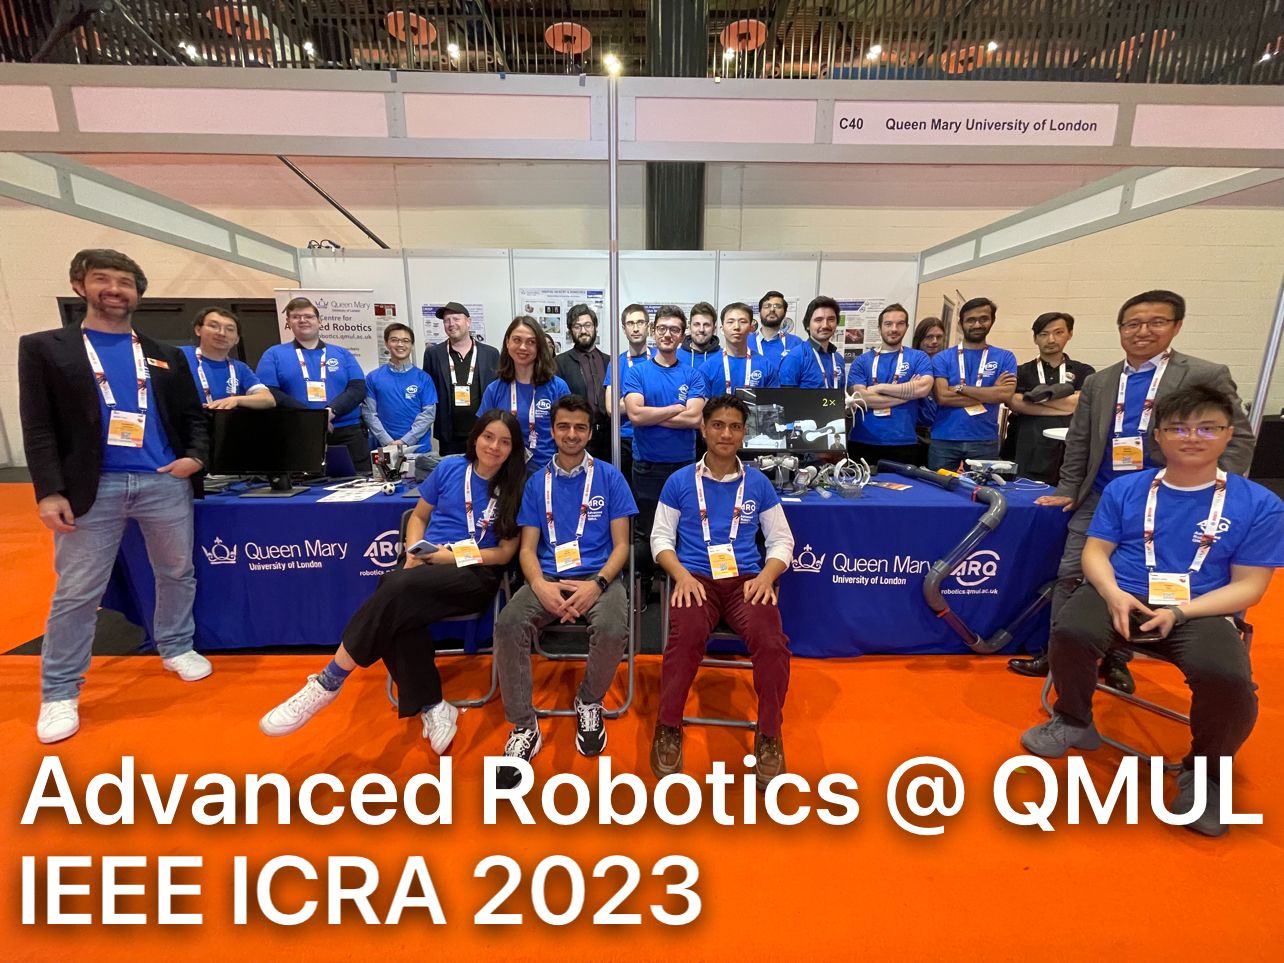 ARQ: Advanced Robotics at Queen Mary